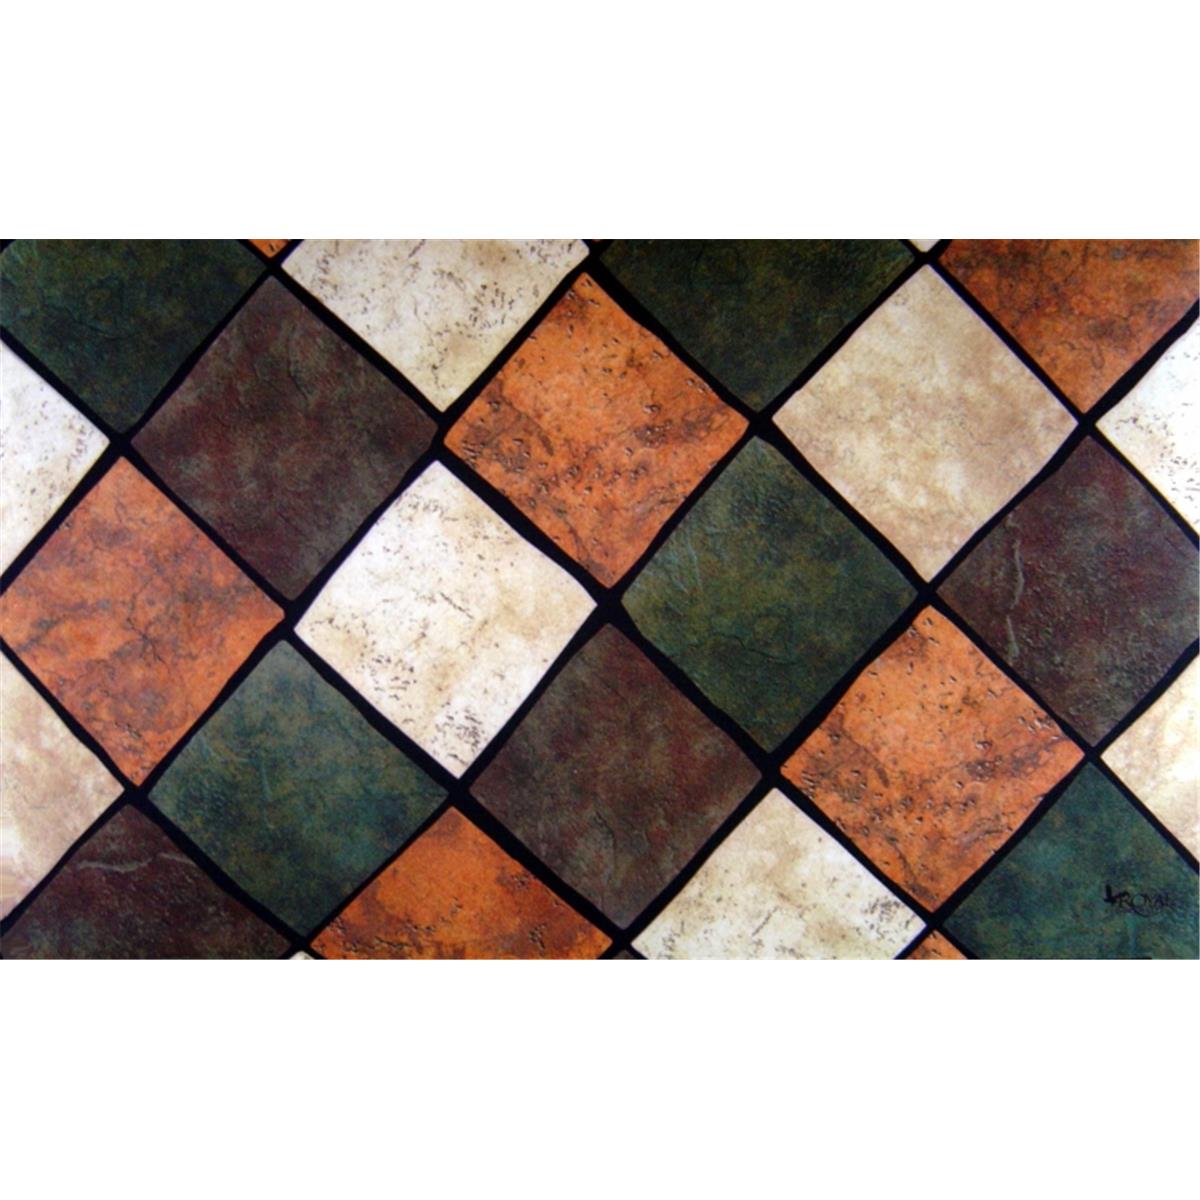 Cpr034 Multi Tiles Doormat 18 X 30 In. Rug - Brown, Brown & Tan, Green